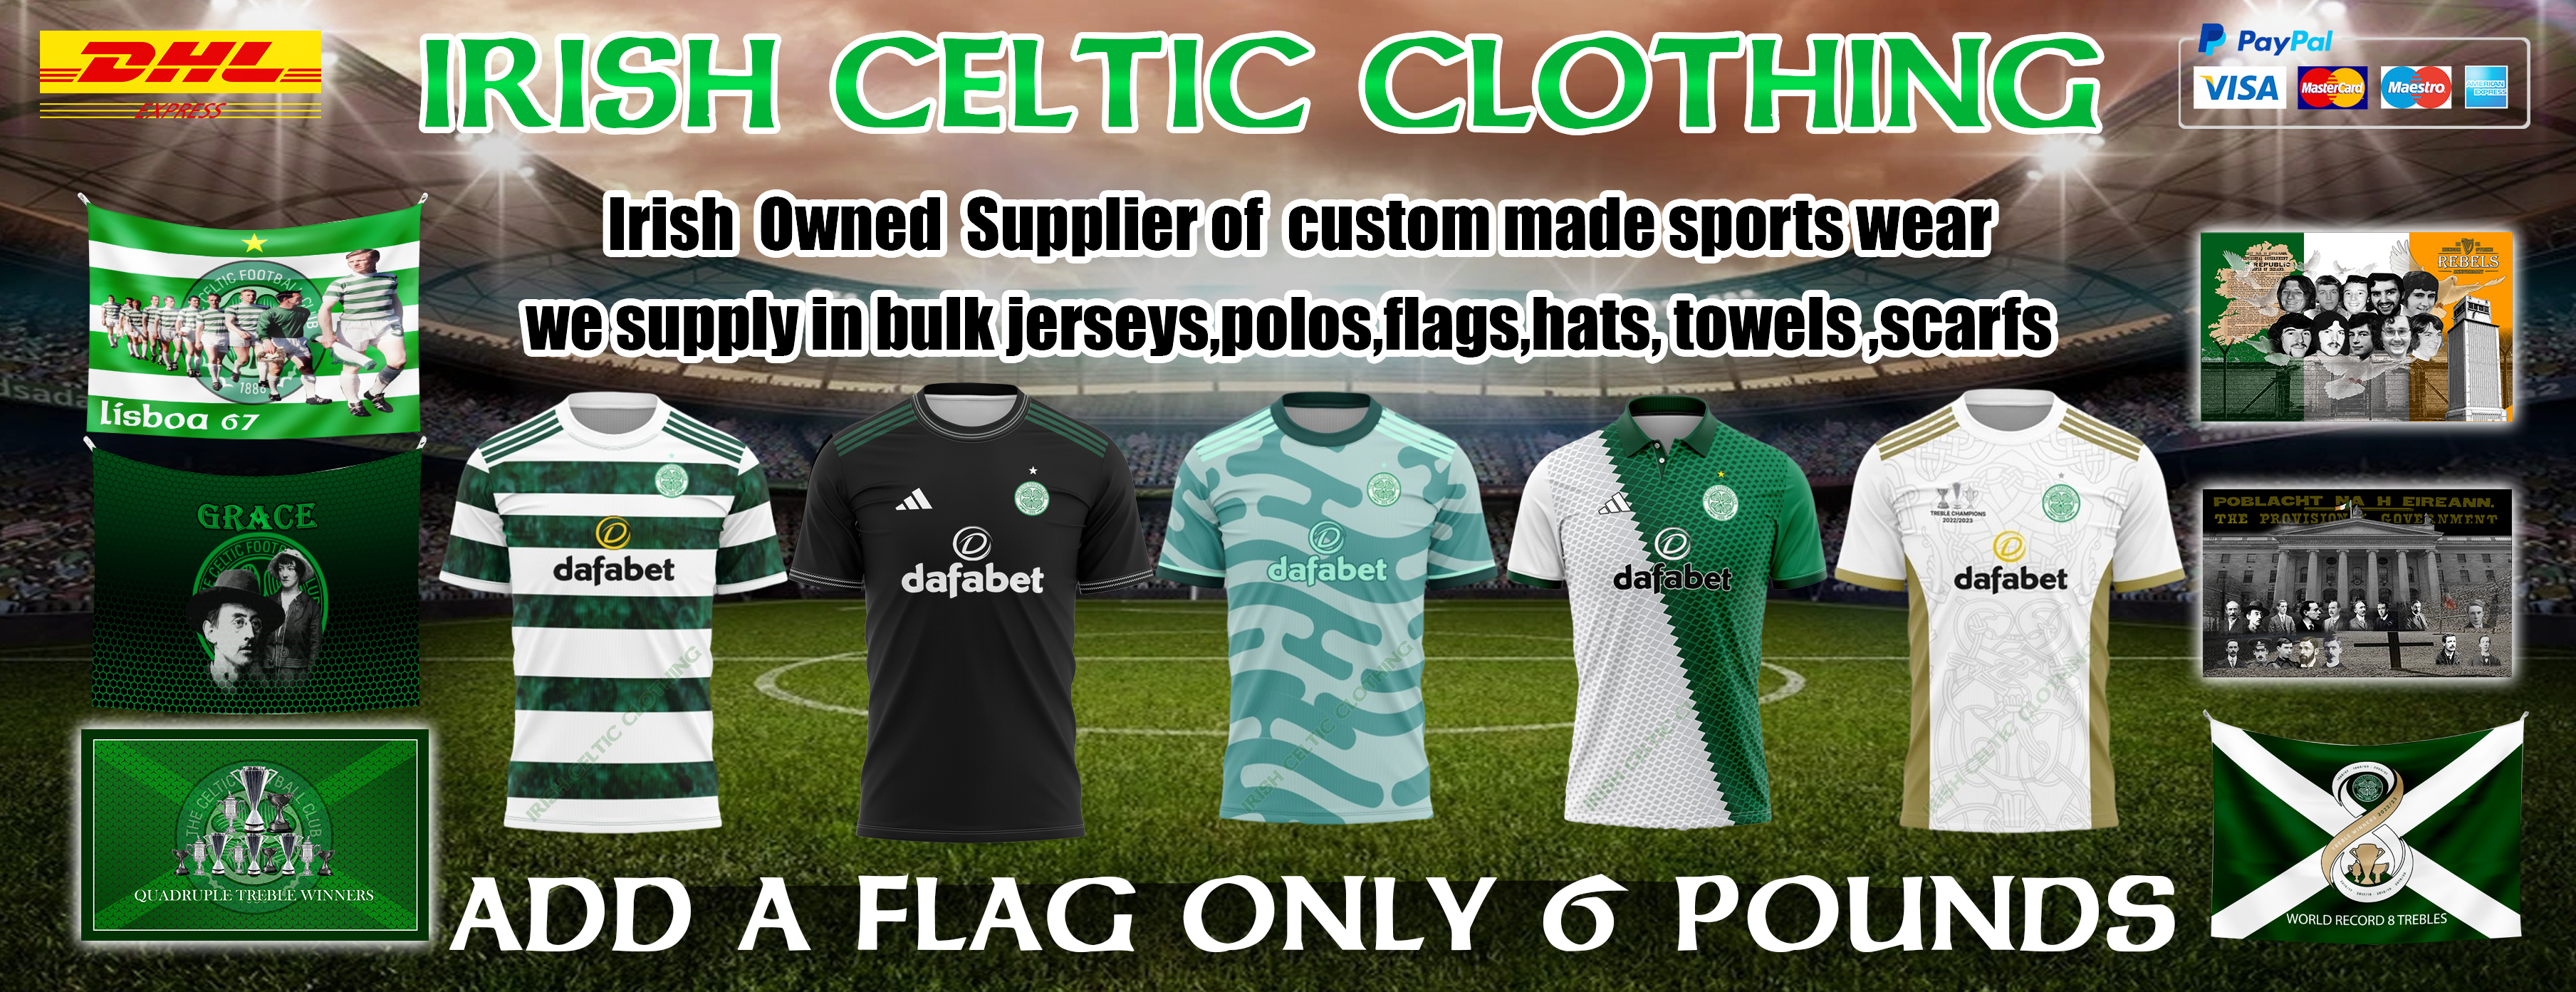 irish and celtic clothing